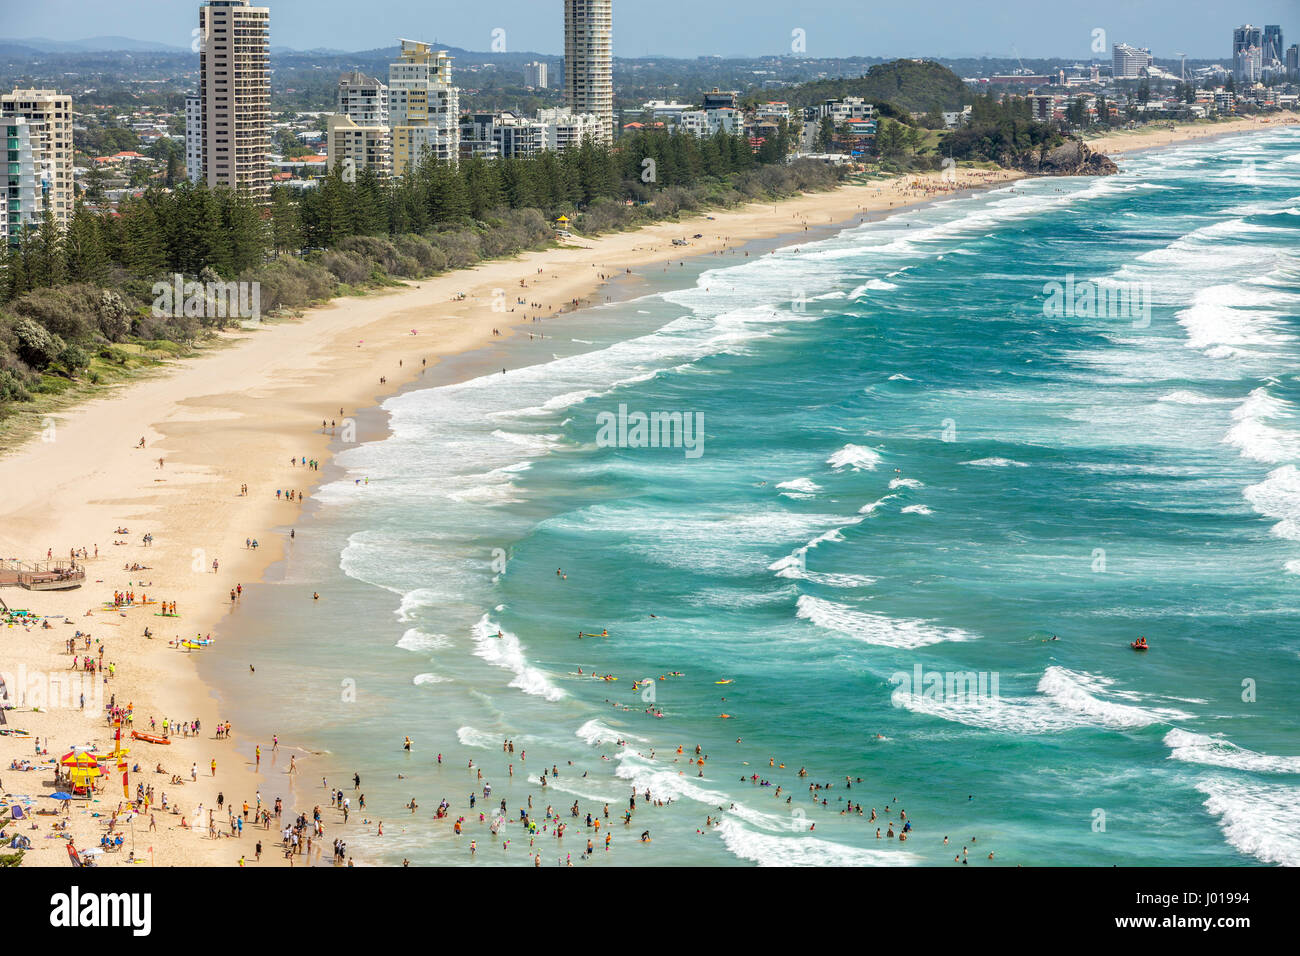 Vista aérea de la playa de Burleigh Heads playa de Surfers Paradise y de Gold Coast, Queensland, Australia Foto de stock